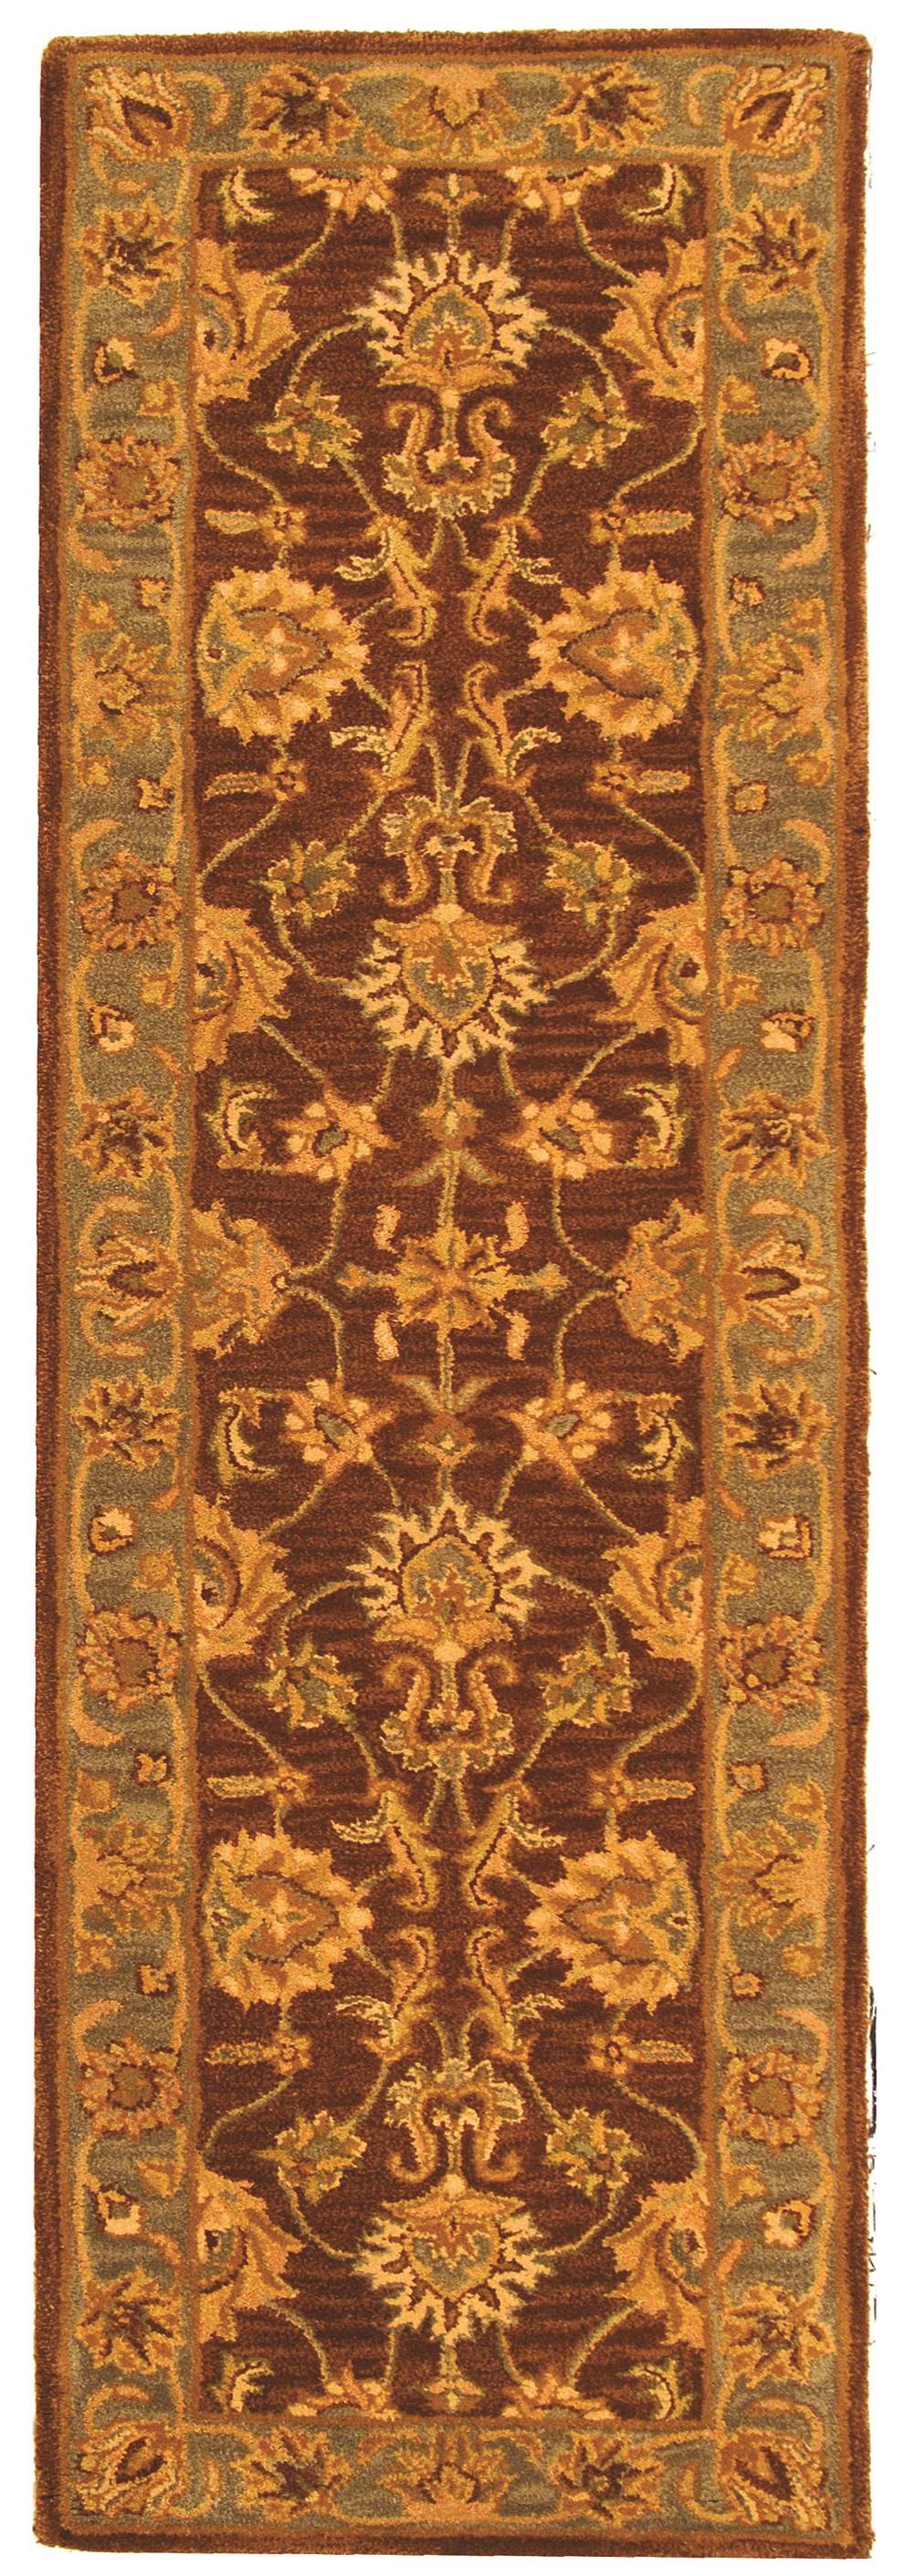 SAFAVIEH Heritage Regis Traditional Wool Runner Rug, Brown/Blue, 2'3" x 8' - image 1 of 4